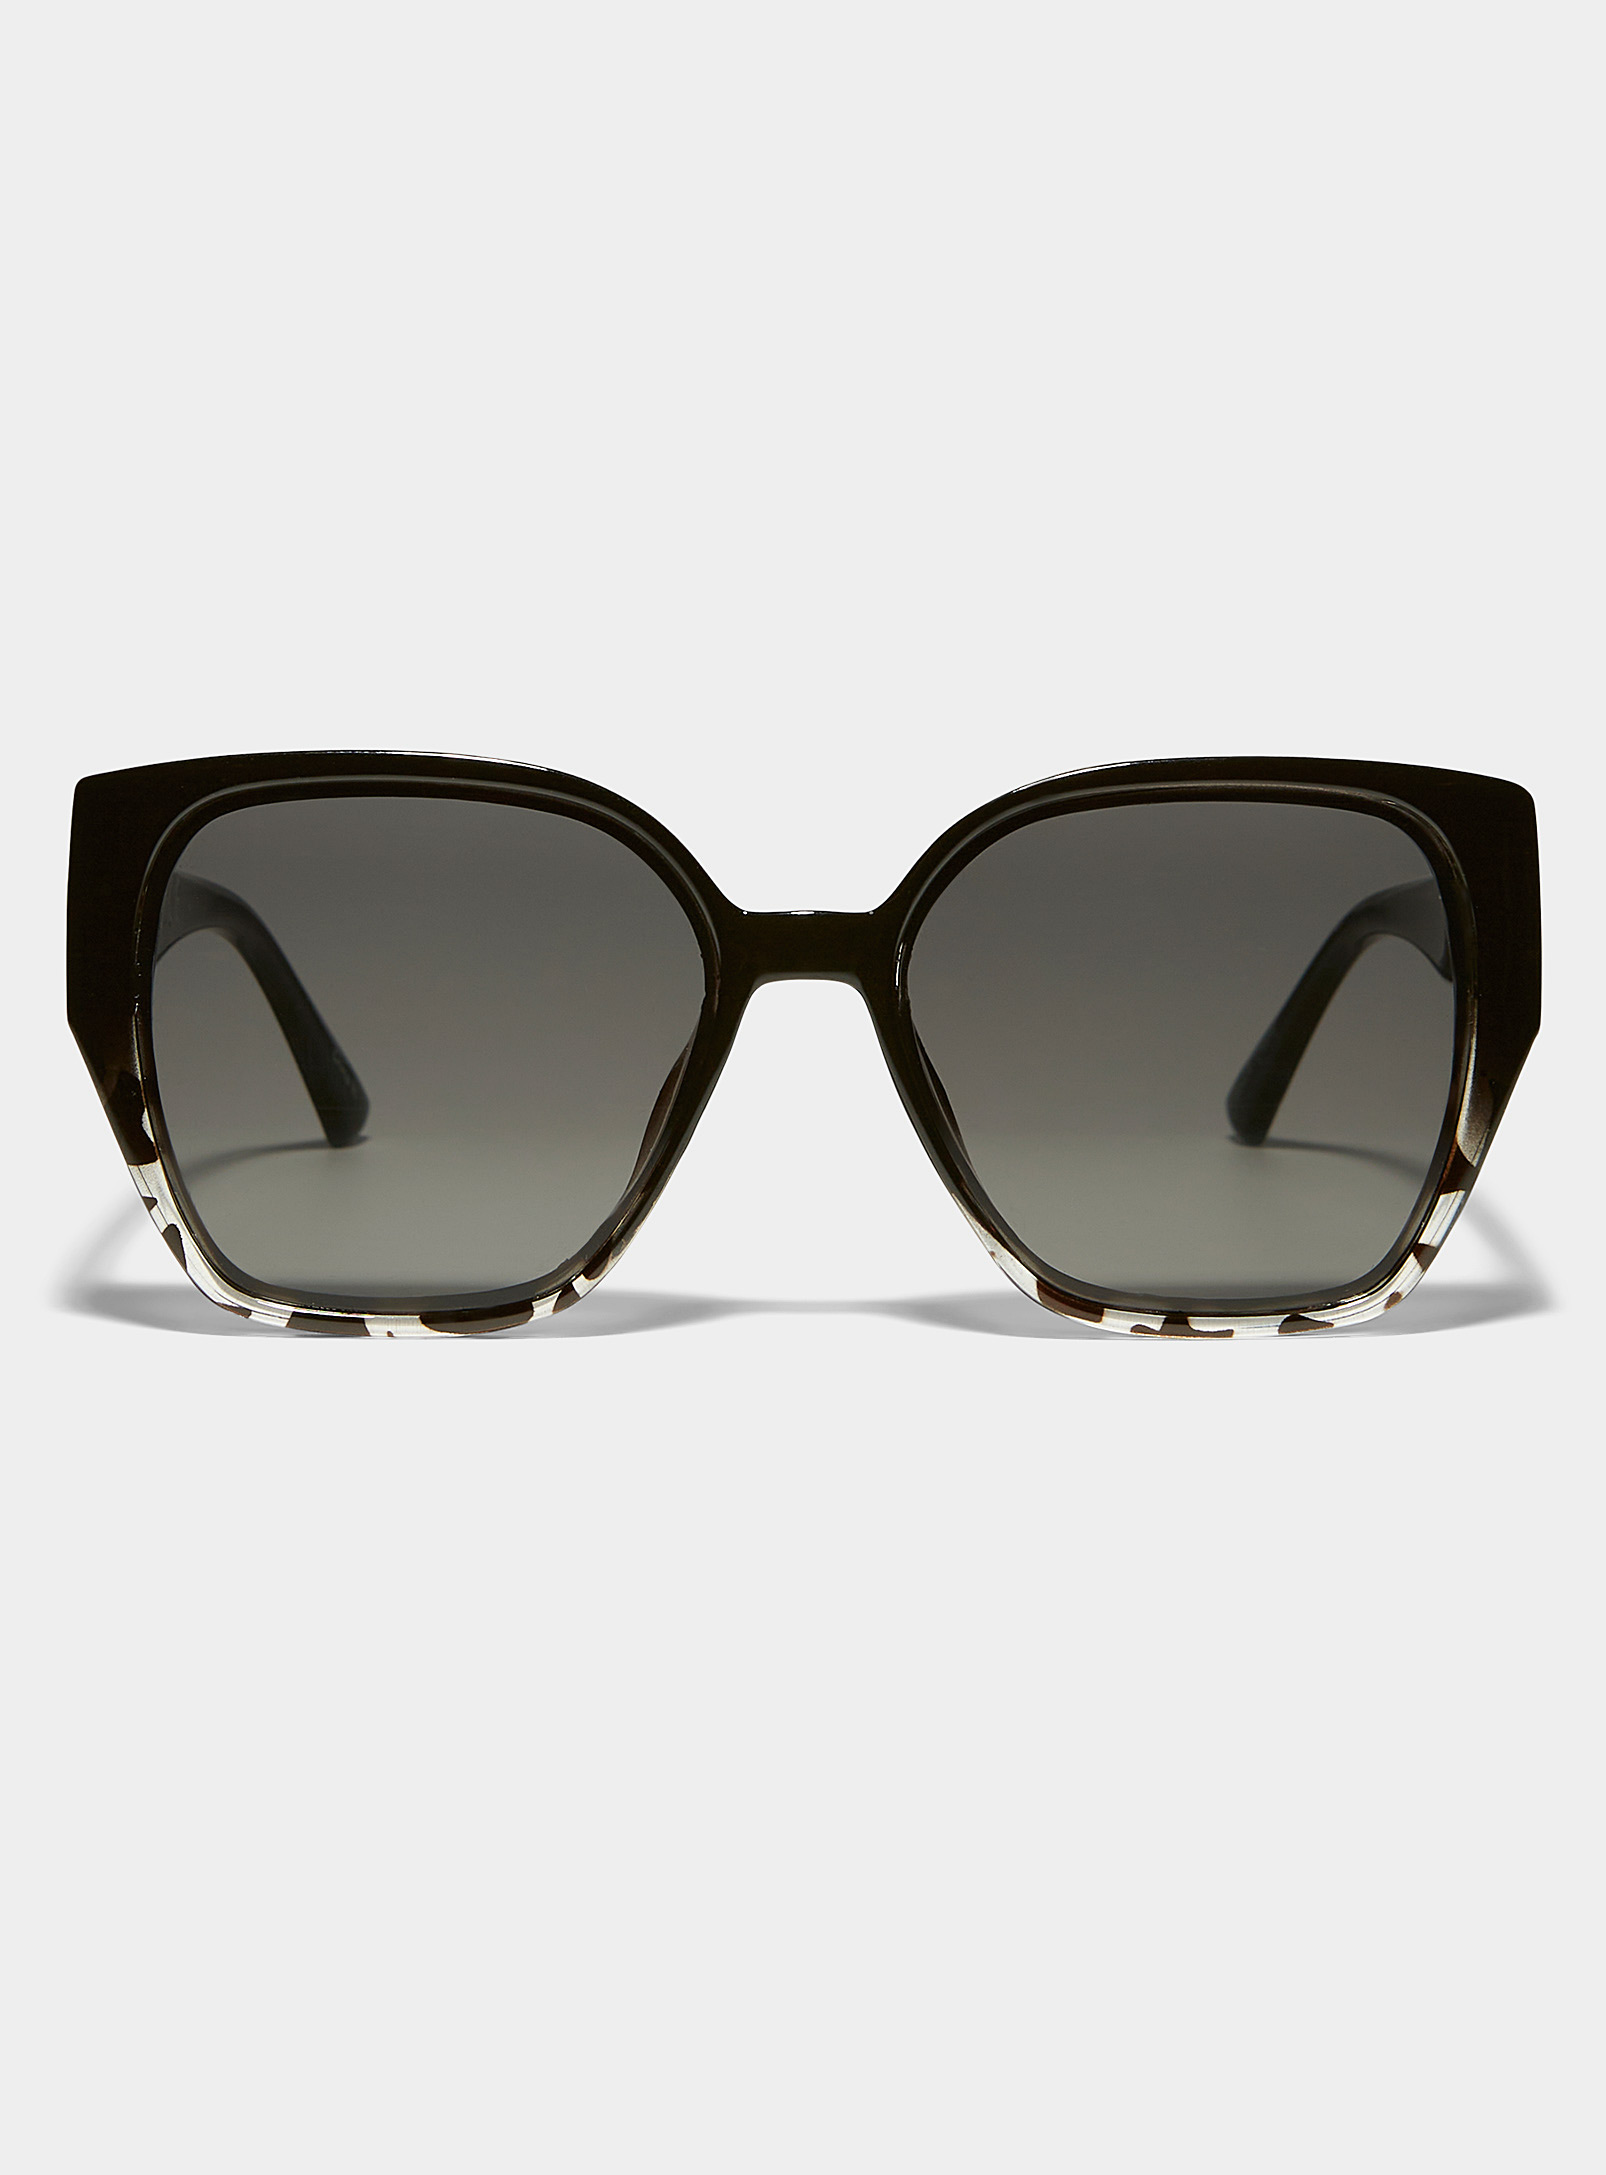 Simons - Women's Tortoiseshell accent round sunglasses